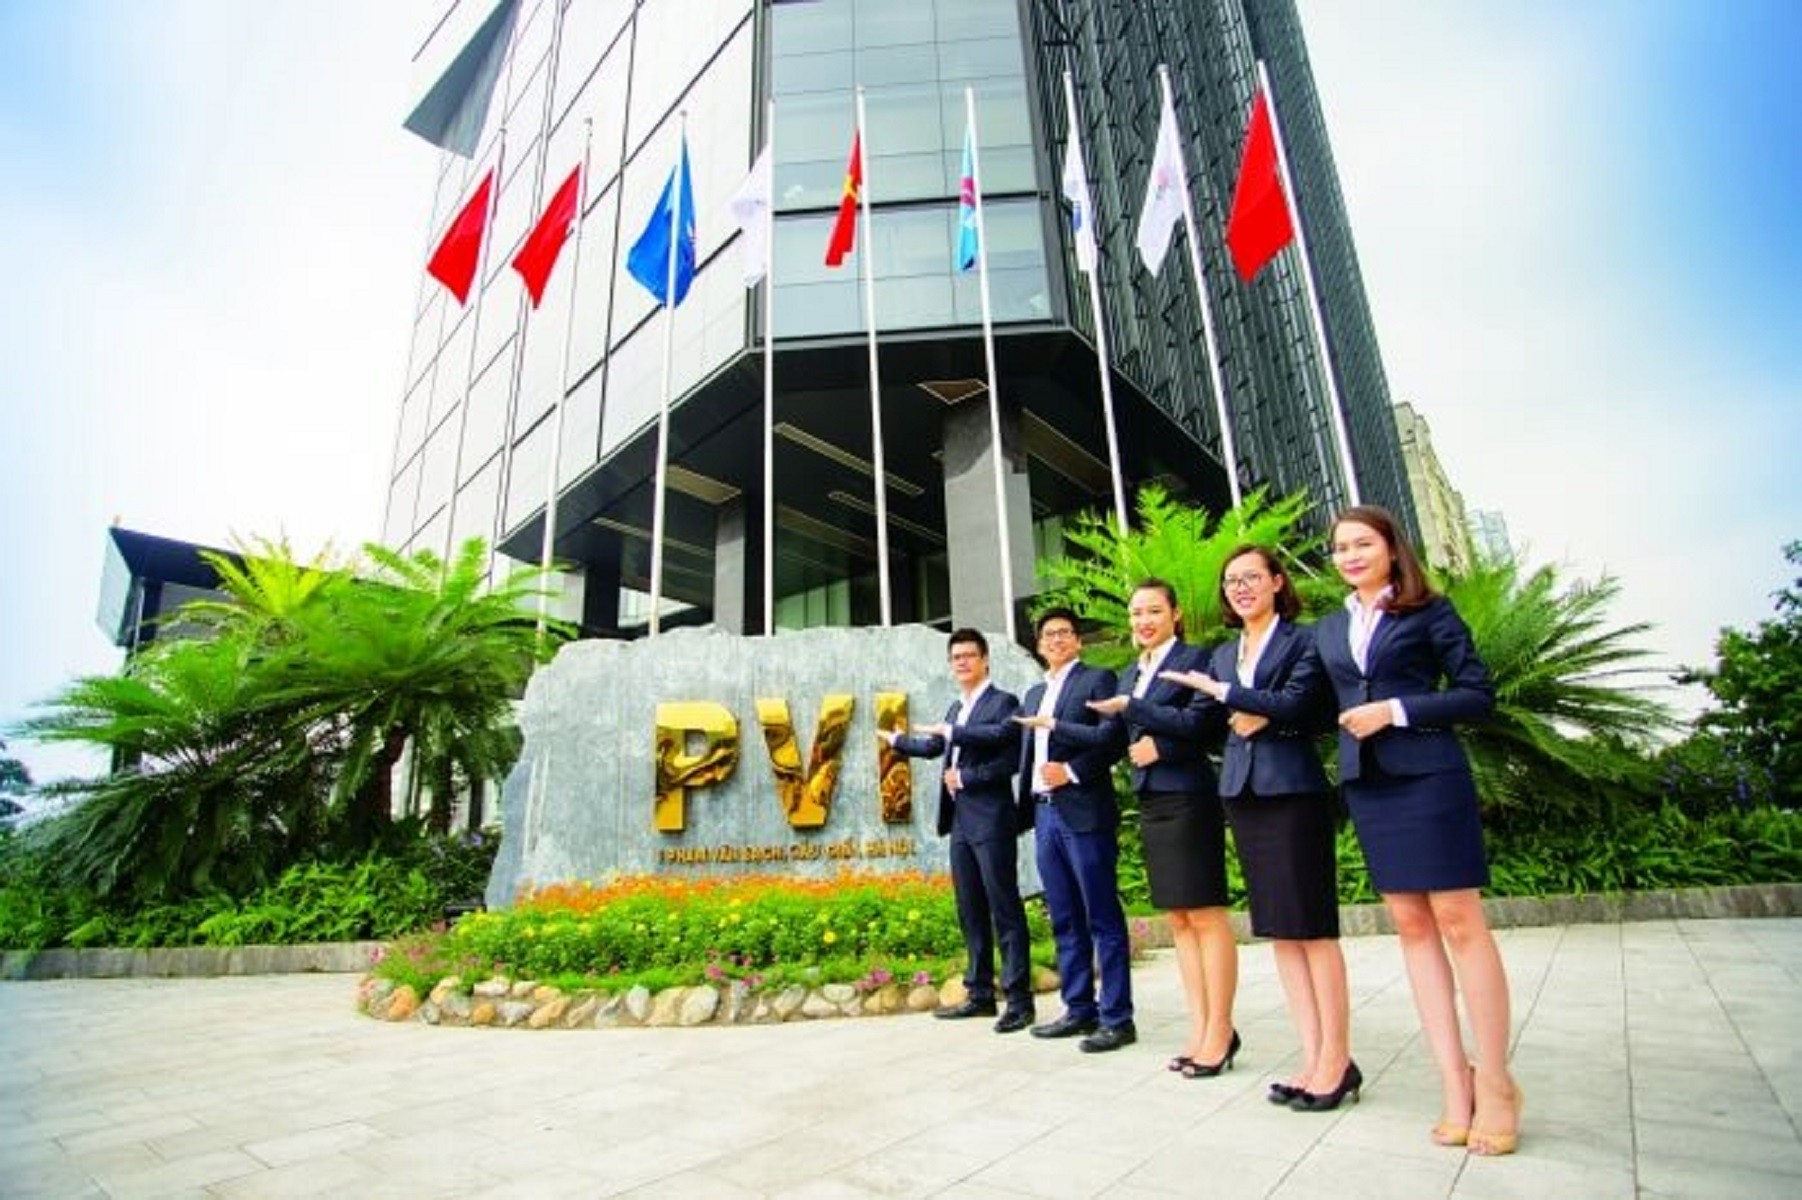 
Bảo hiểm PVI chính là thành viên của PVI Holdings hoạt động trên lĩnh vực kinh doanh bảo hiểm phi nhân thọ với vị thế đã được khẳng định trong nhiều năm với vị thế là doanh nghiệp bảo hiểm số 1 Việt Nam
